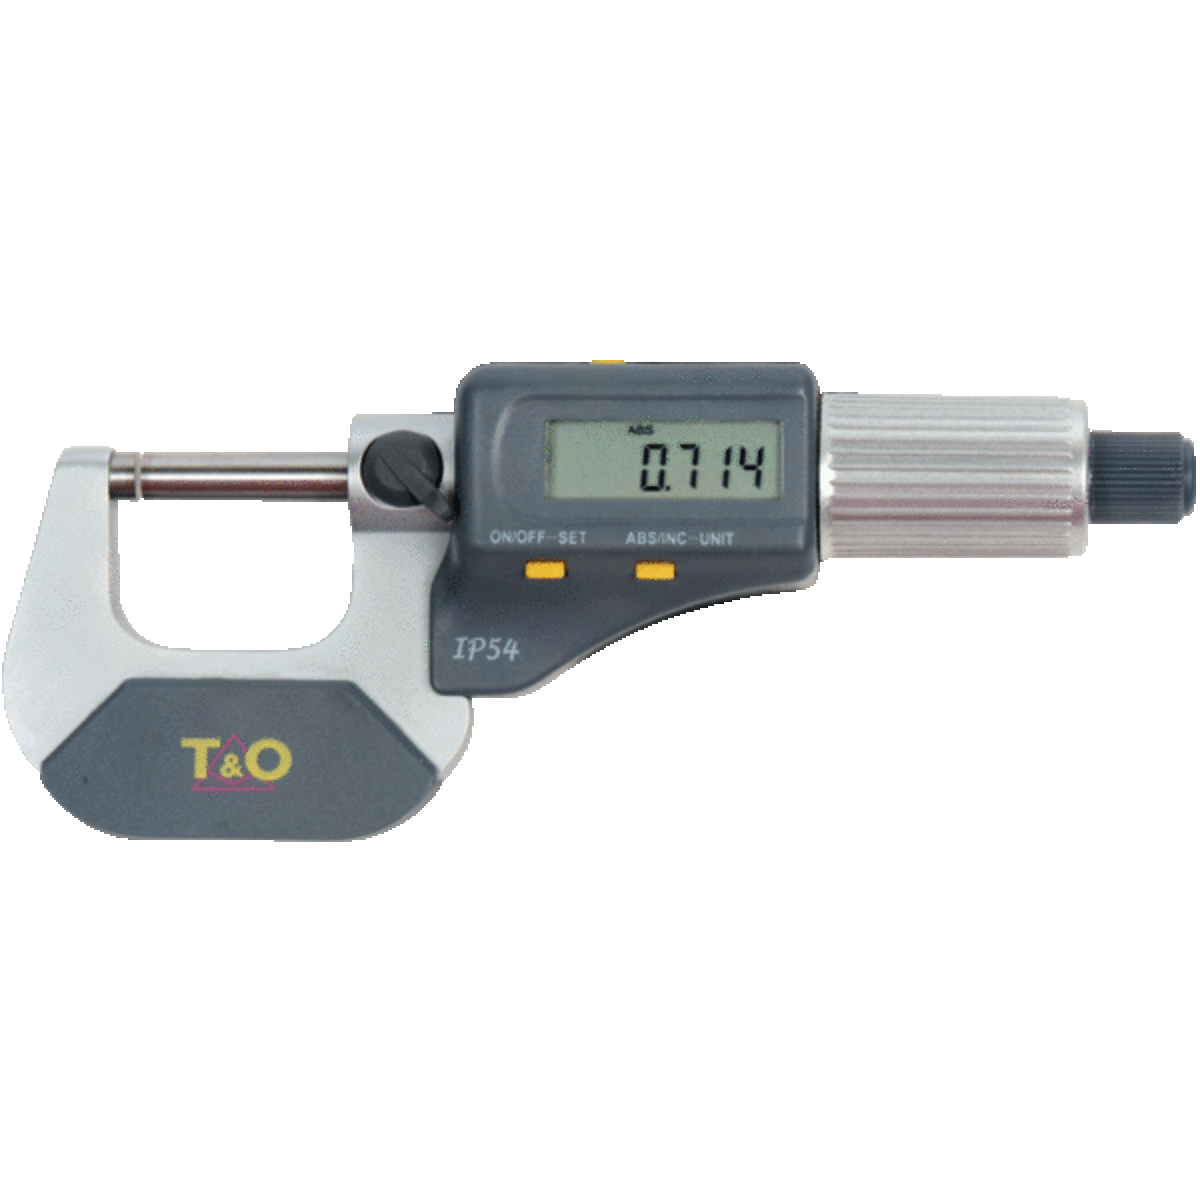 Micromètre d'extérieur à lecture digitale IP54 50-75 mm avec sortie de données T&O